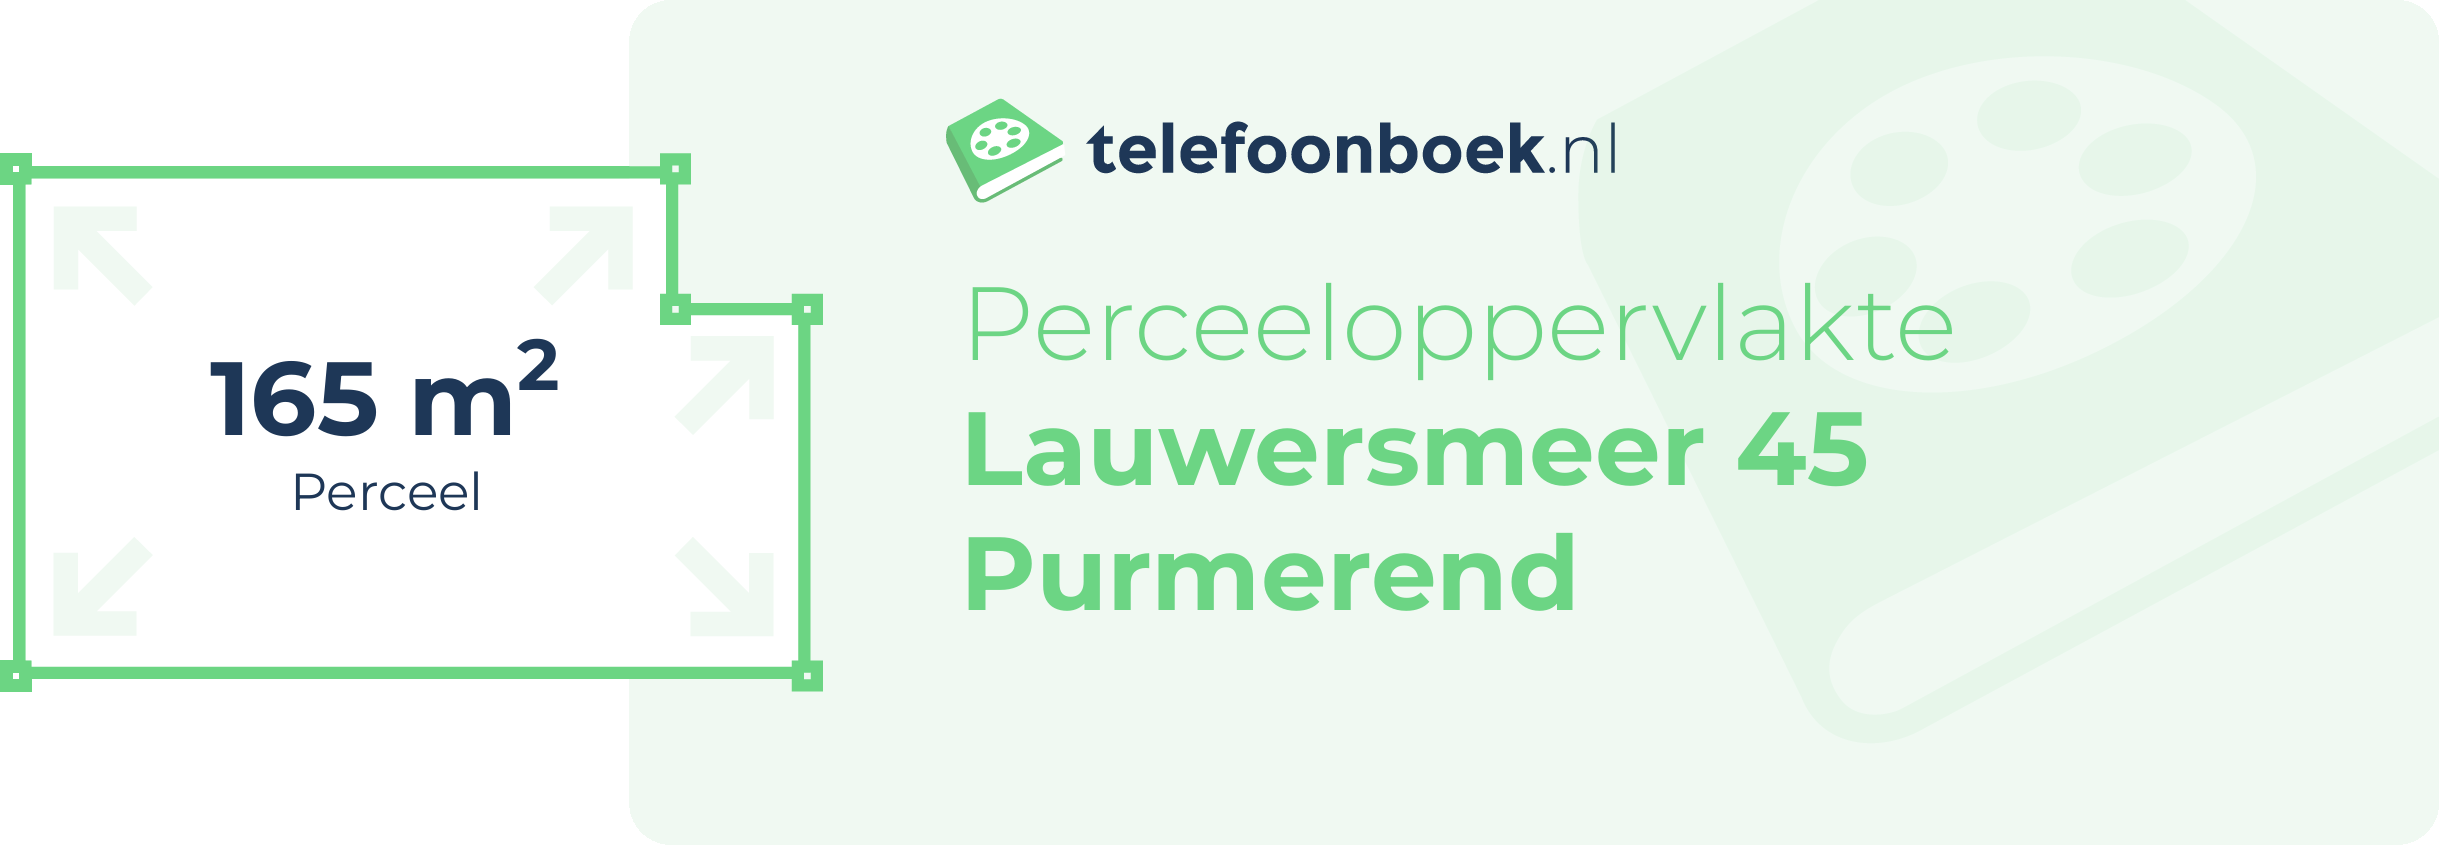 Perceeloppervlakte Lauwersmeer 45 Purmerend